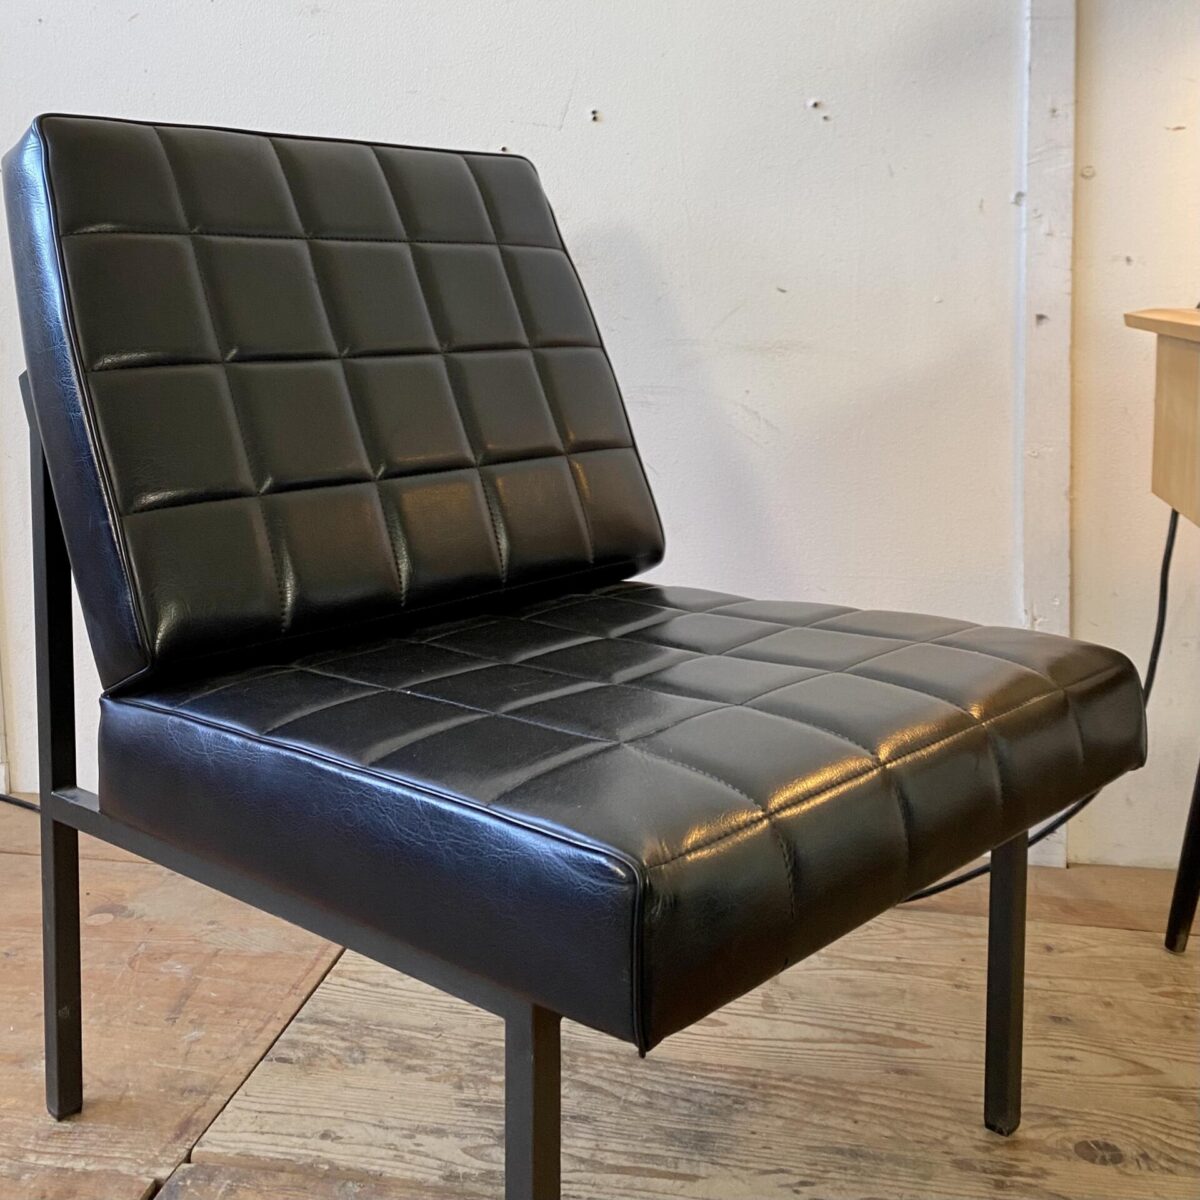 Deuxieme.shop 60er Jahre Easy chairs. Zwei schwarze Kunstleder Sessel. 65x55cm Sitzhöhe 37cm. Preis fürs Set. Die Sessel sind in gutem Vintage Zustand mit kleineren Abnutzungen. Das Metallgestell ist Anthrazit grau. 